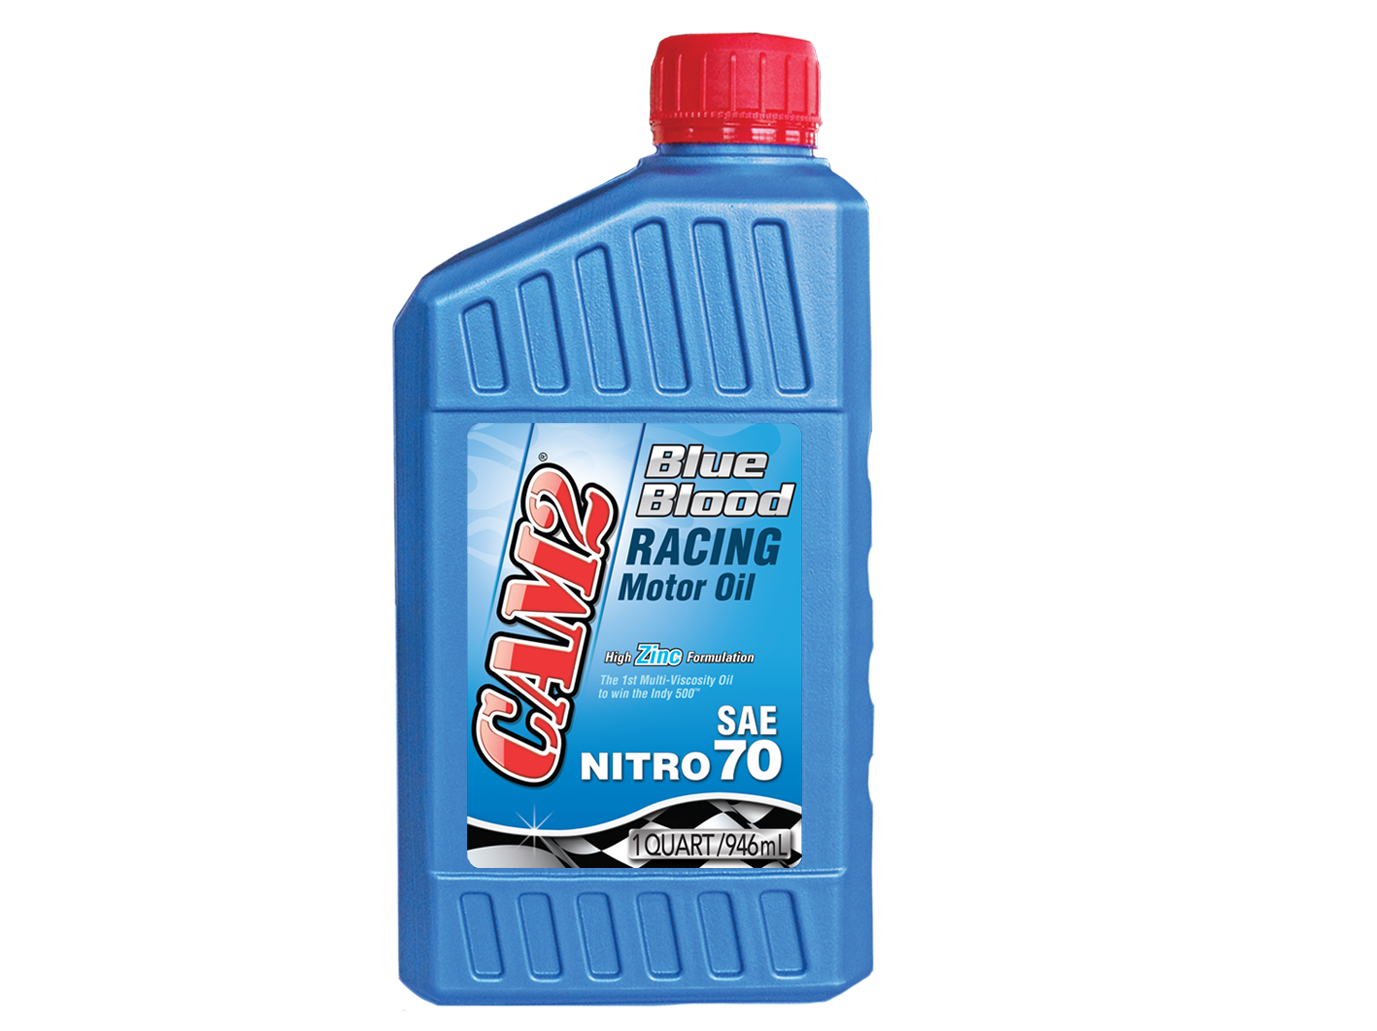 A blue bottle of racing motor oil